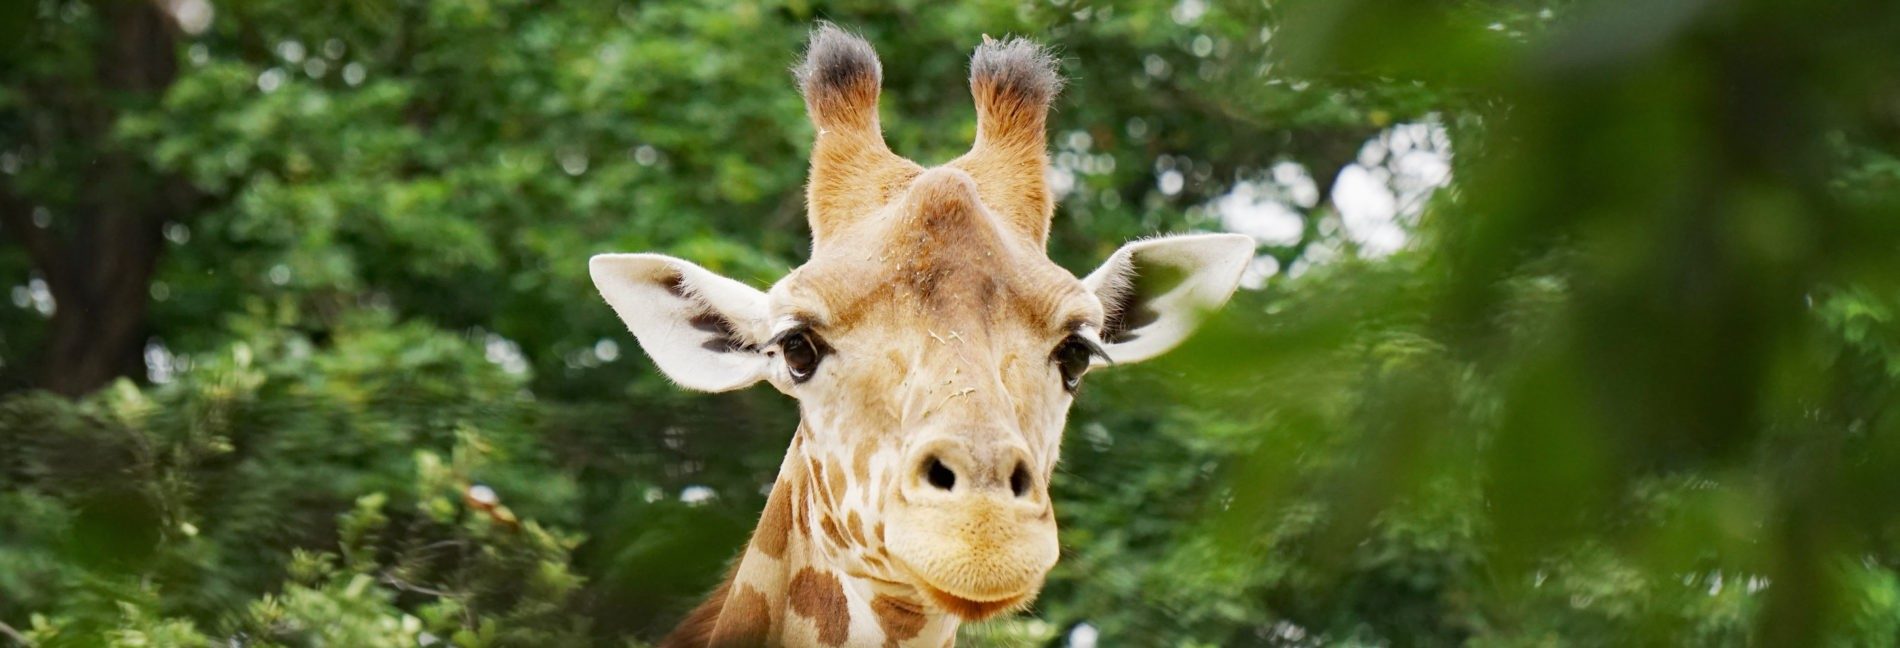 Kordofan giraffe